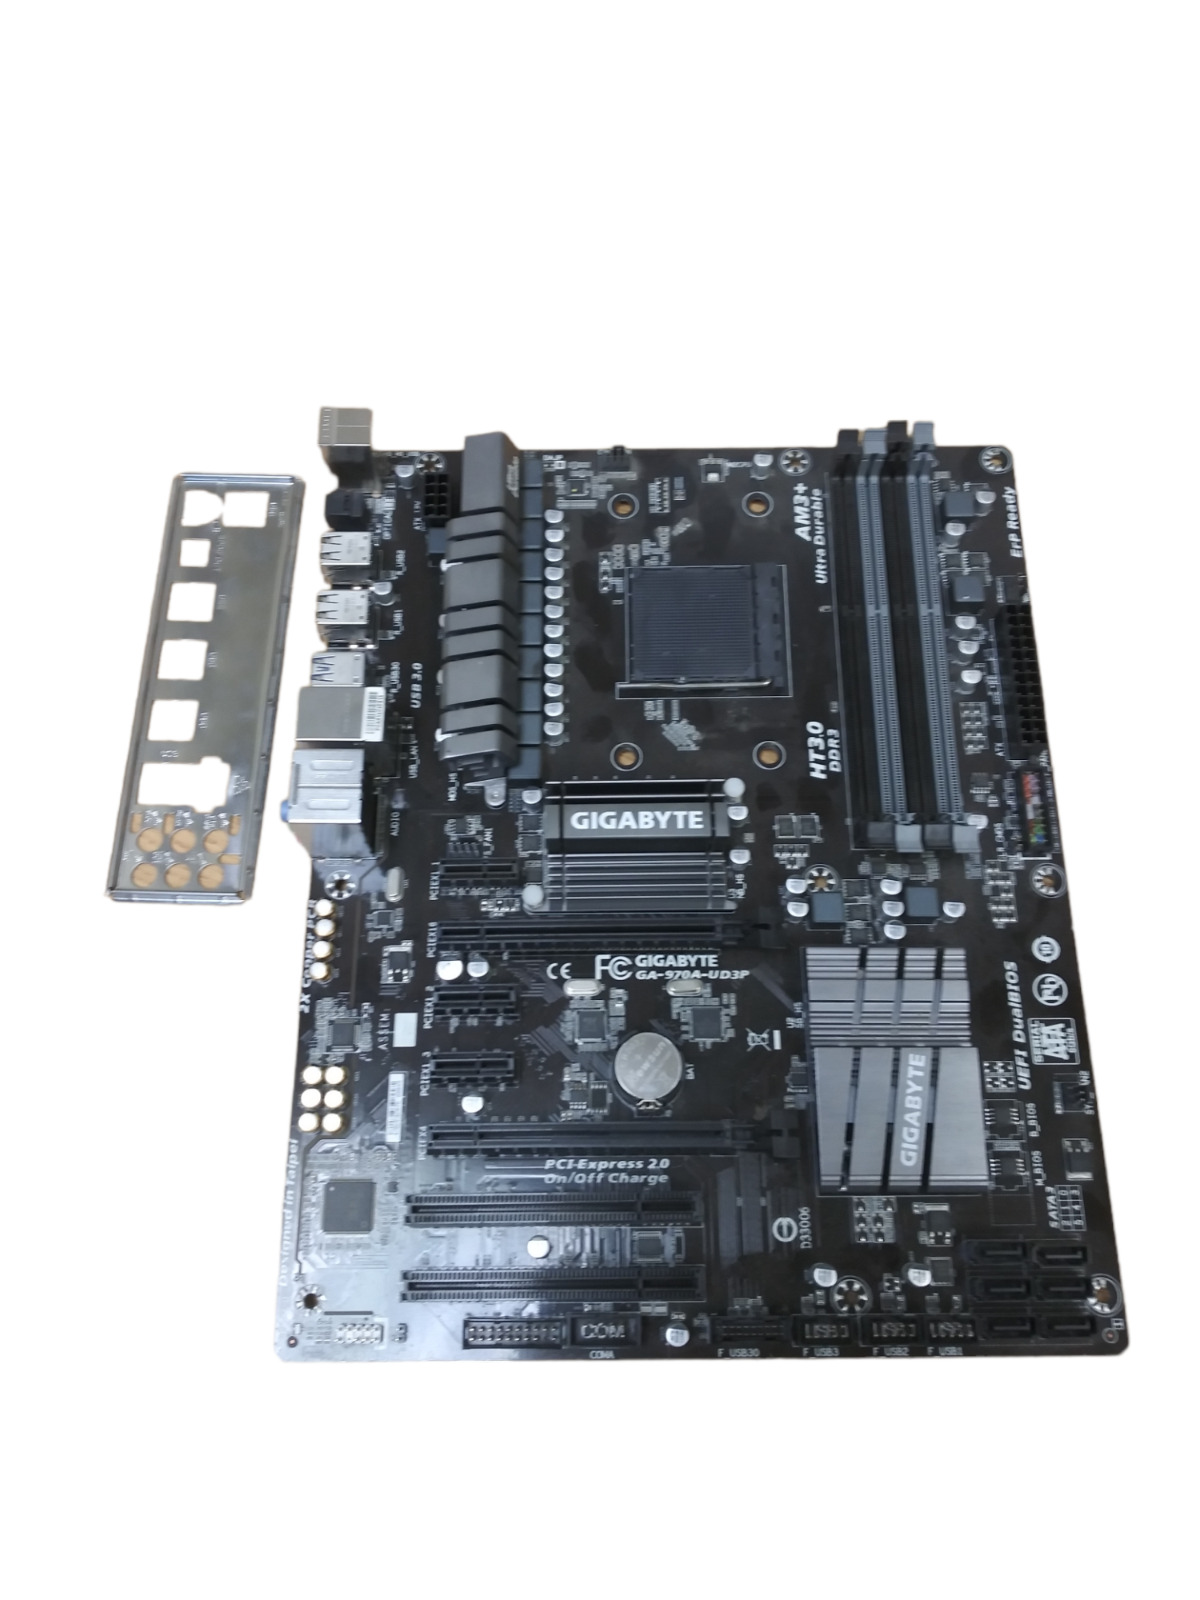 GA-970A-UD3P Gigabyte Technology Desktop motherboard,AMD,AM3/AM3+ socket Tested